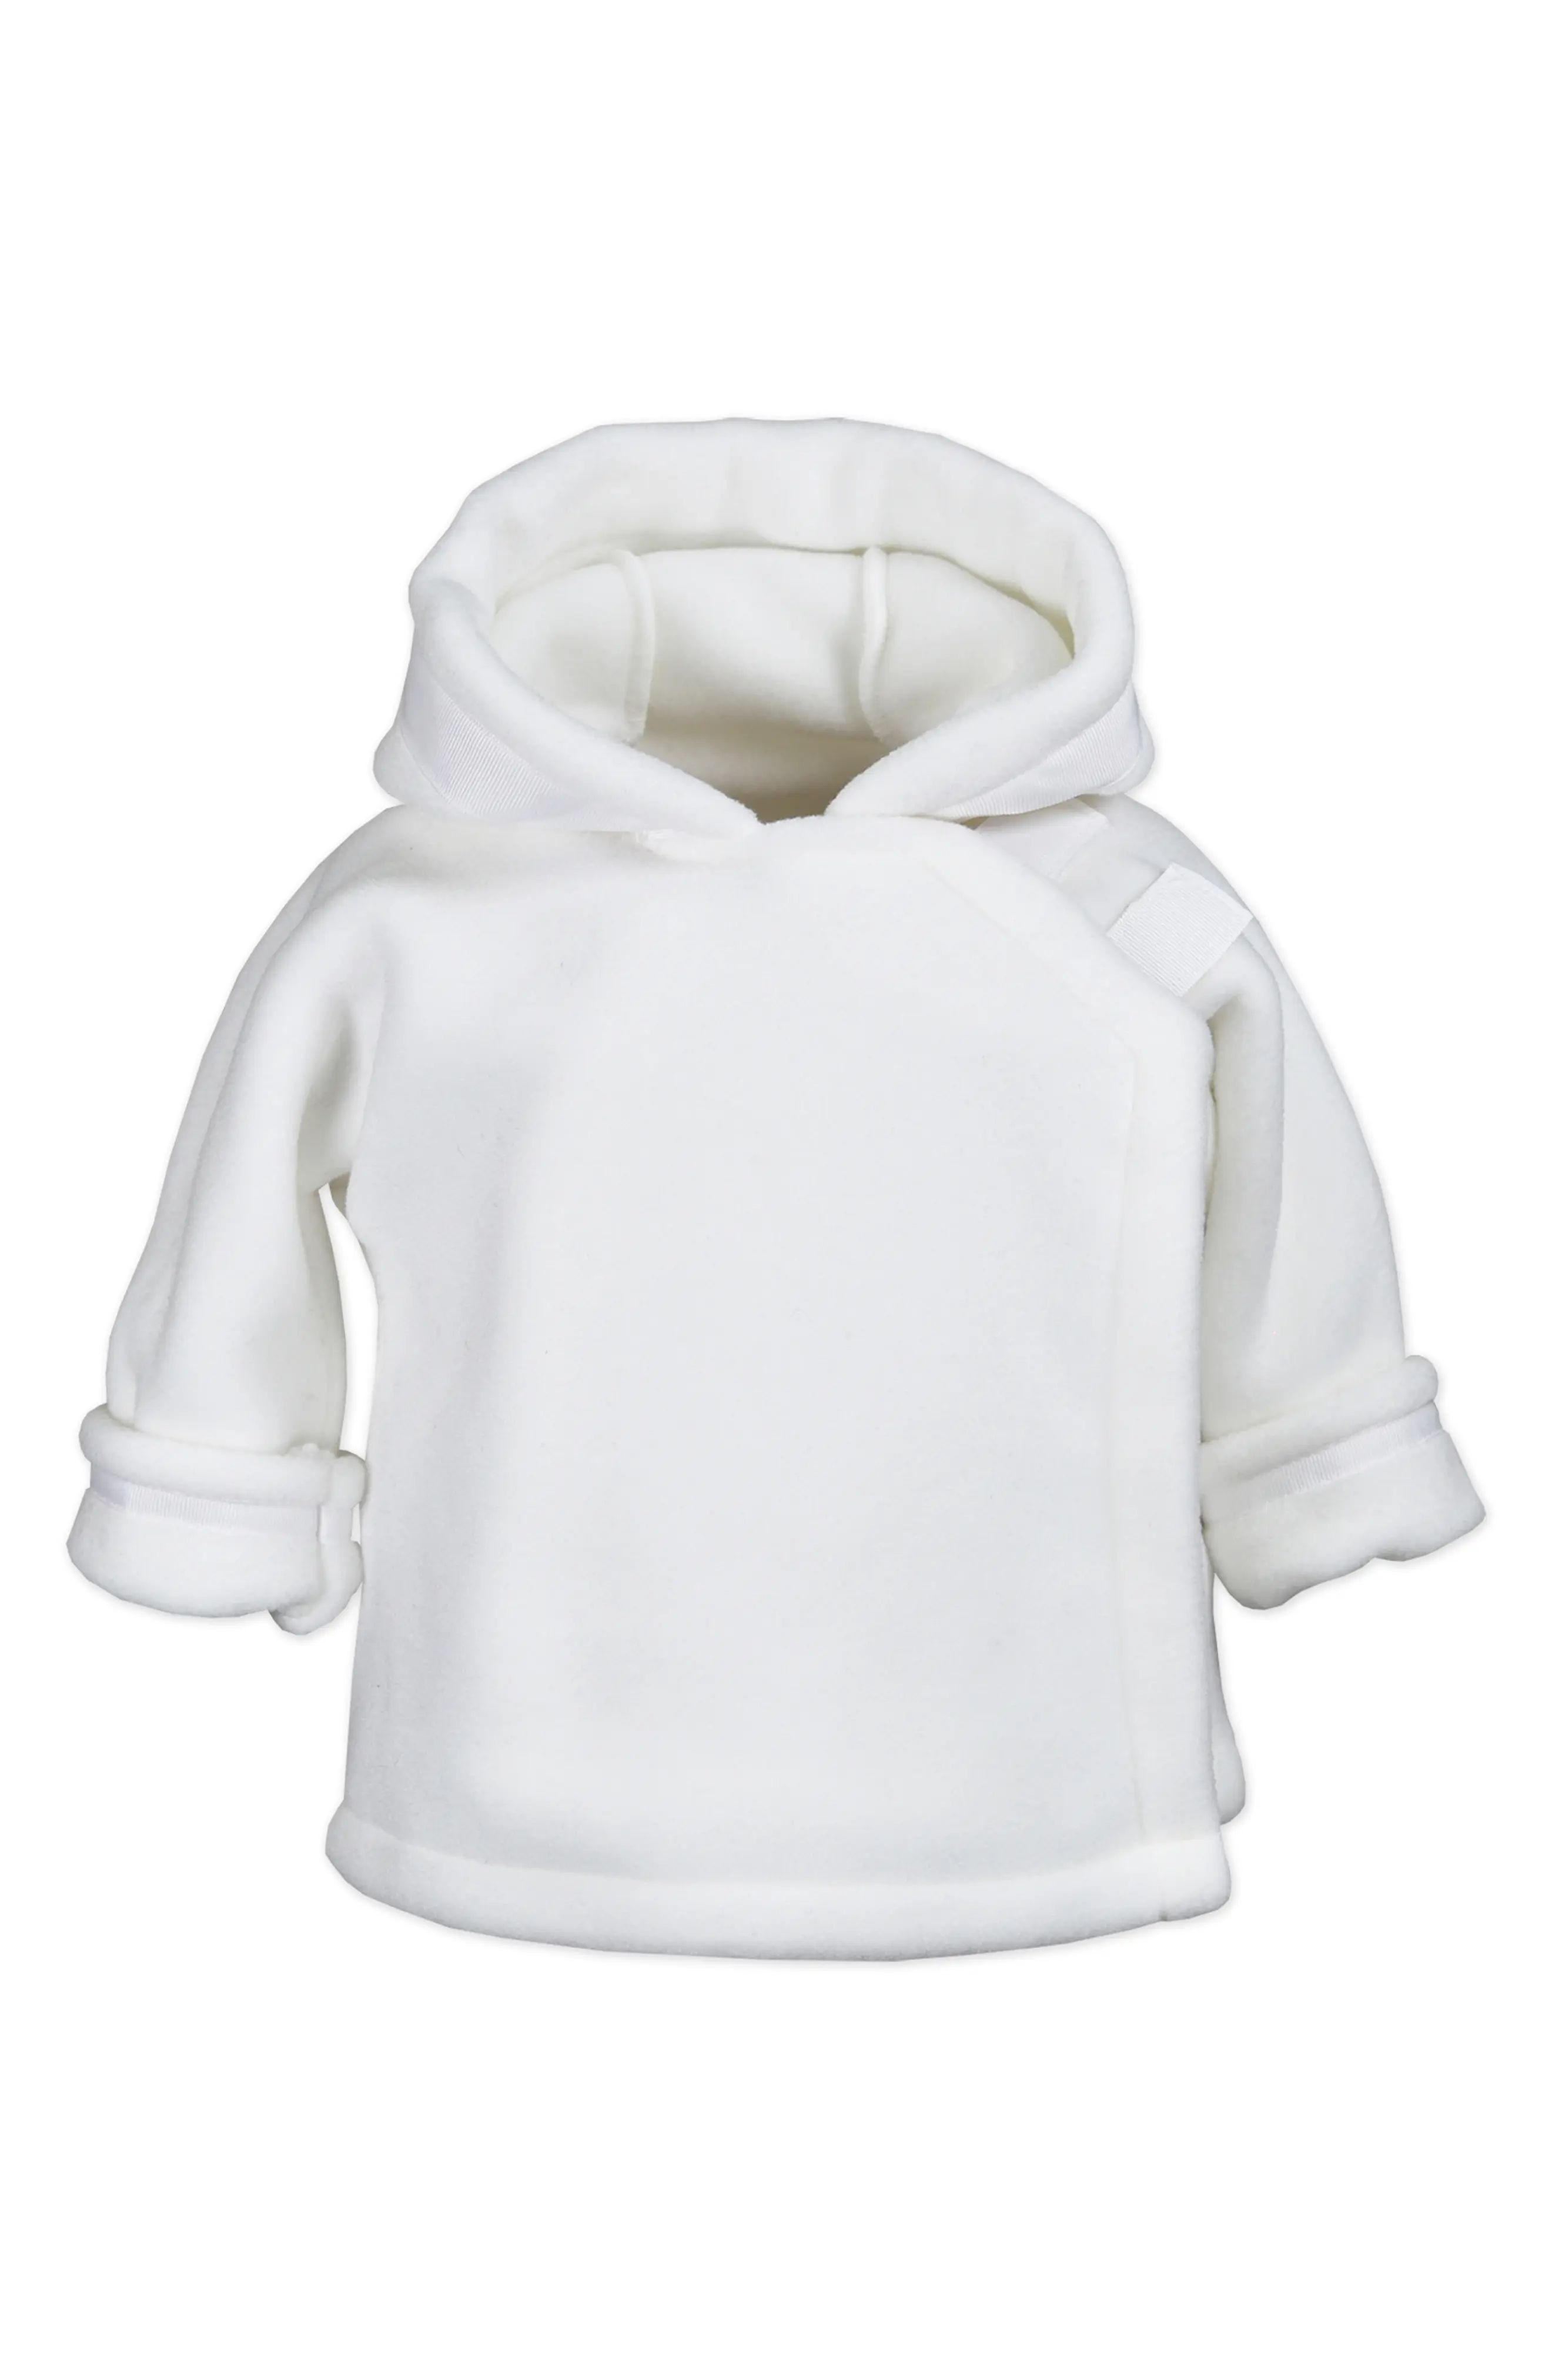 Widgeon Warmplus Favorite Water Repellent Polartec(R) Fleece Jacket in White at Nordstrom, Size 3M | Nordstrom